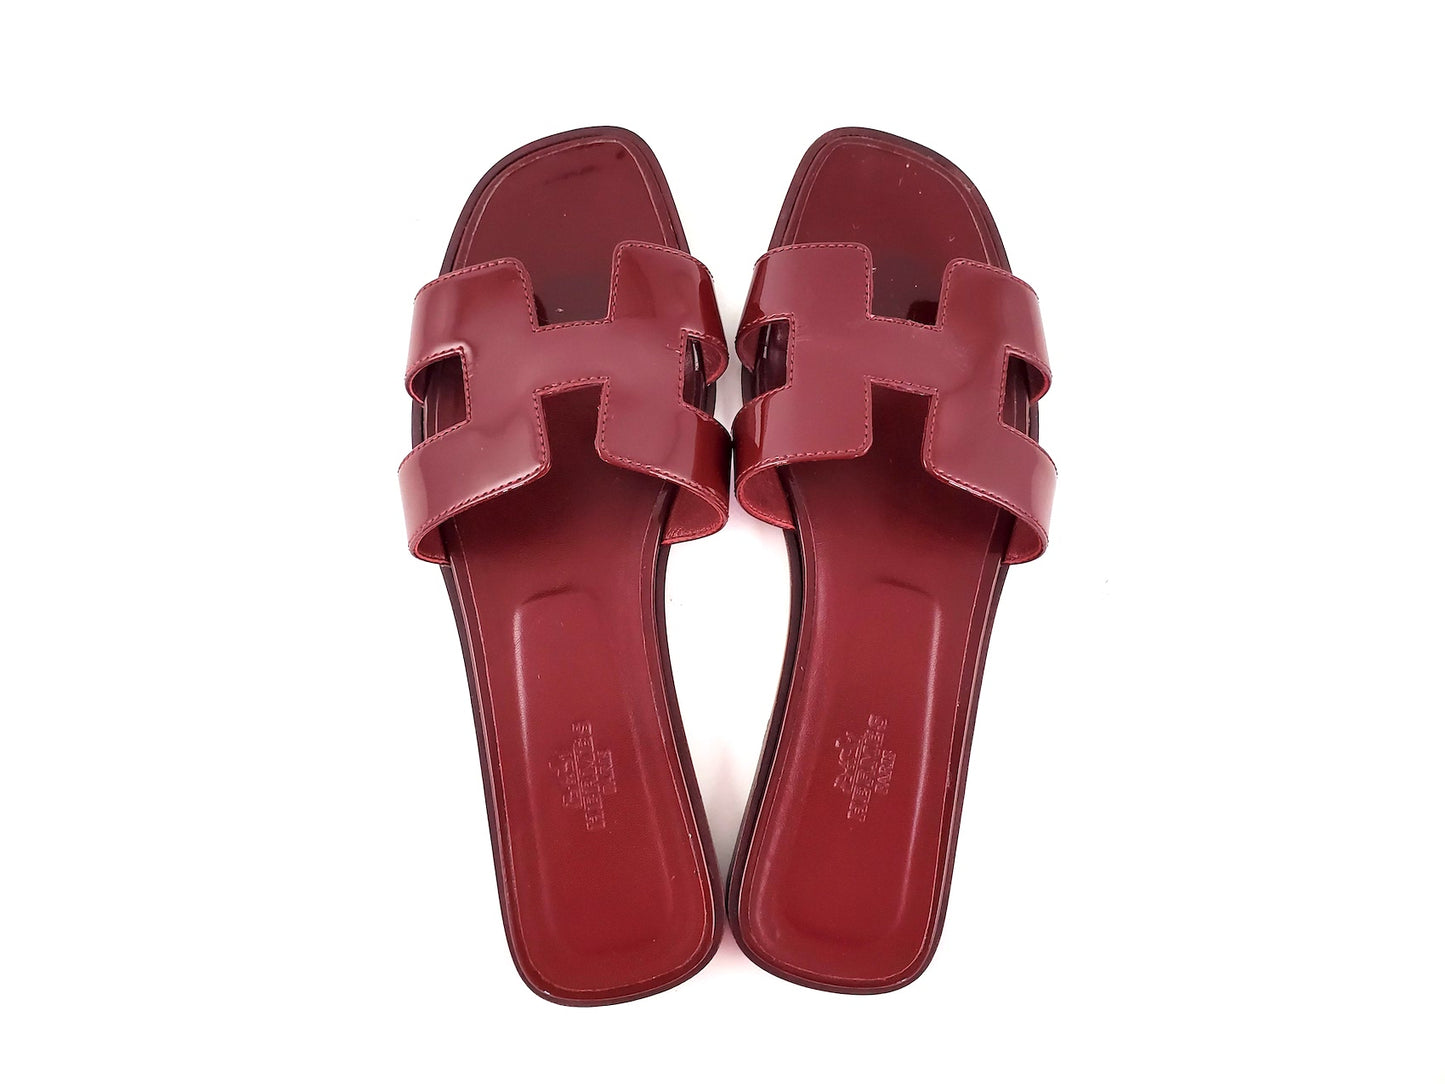 Hermes Burgundy Patent Leather Oran Slide Sandals 38.5